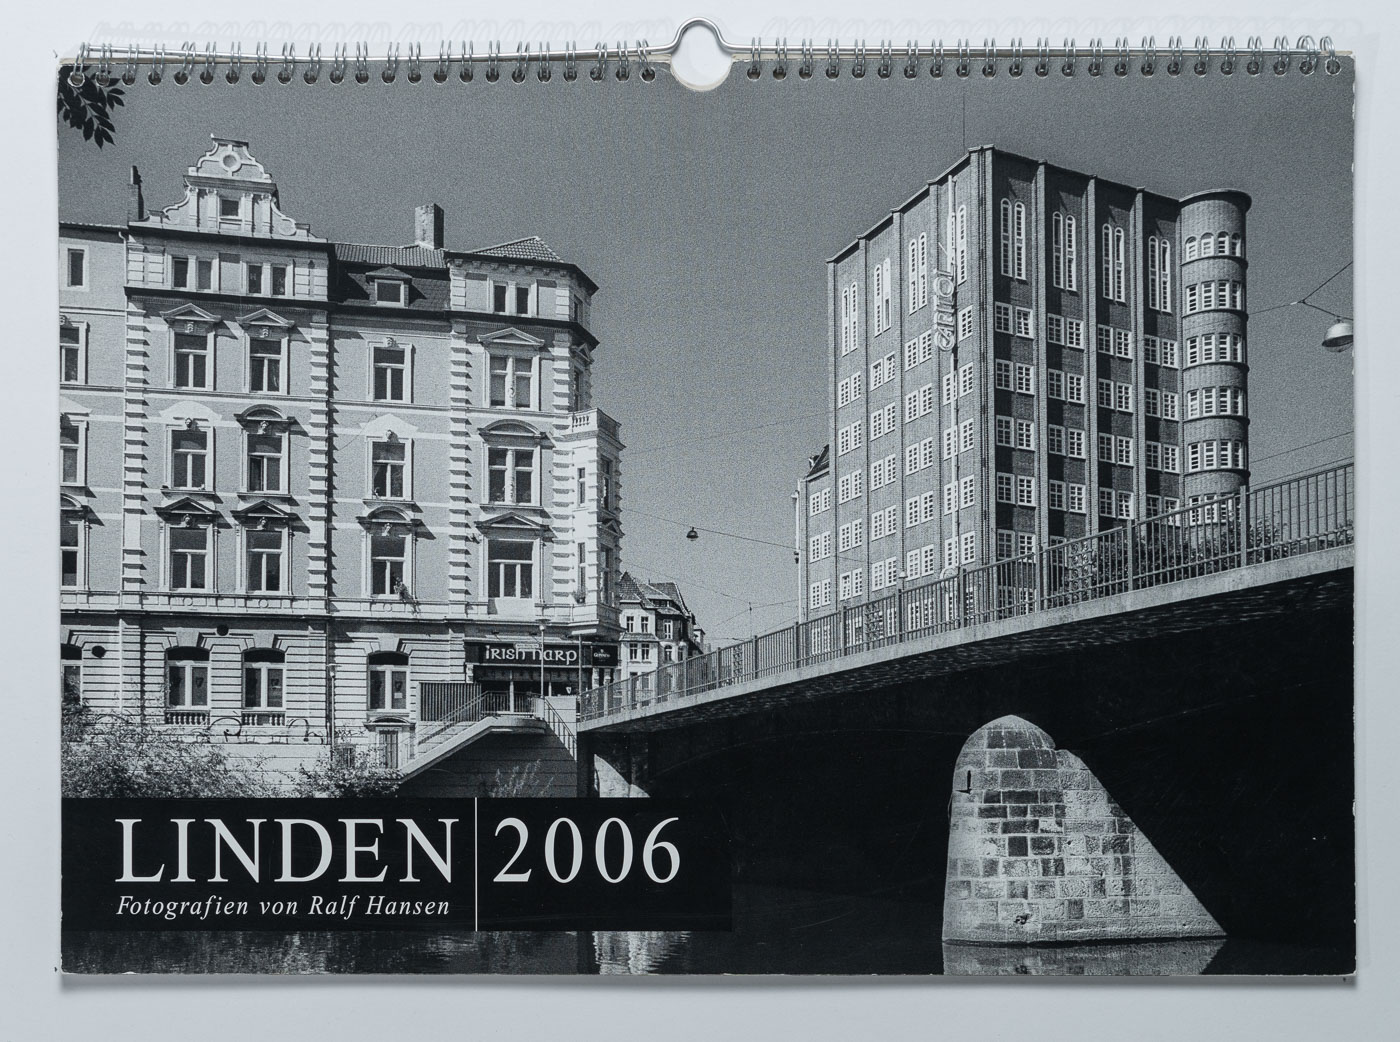 Lindenkalender LINDEN 2006